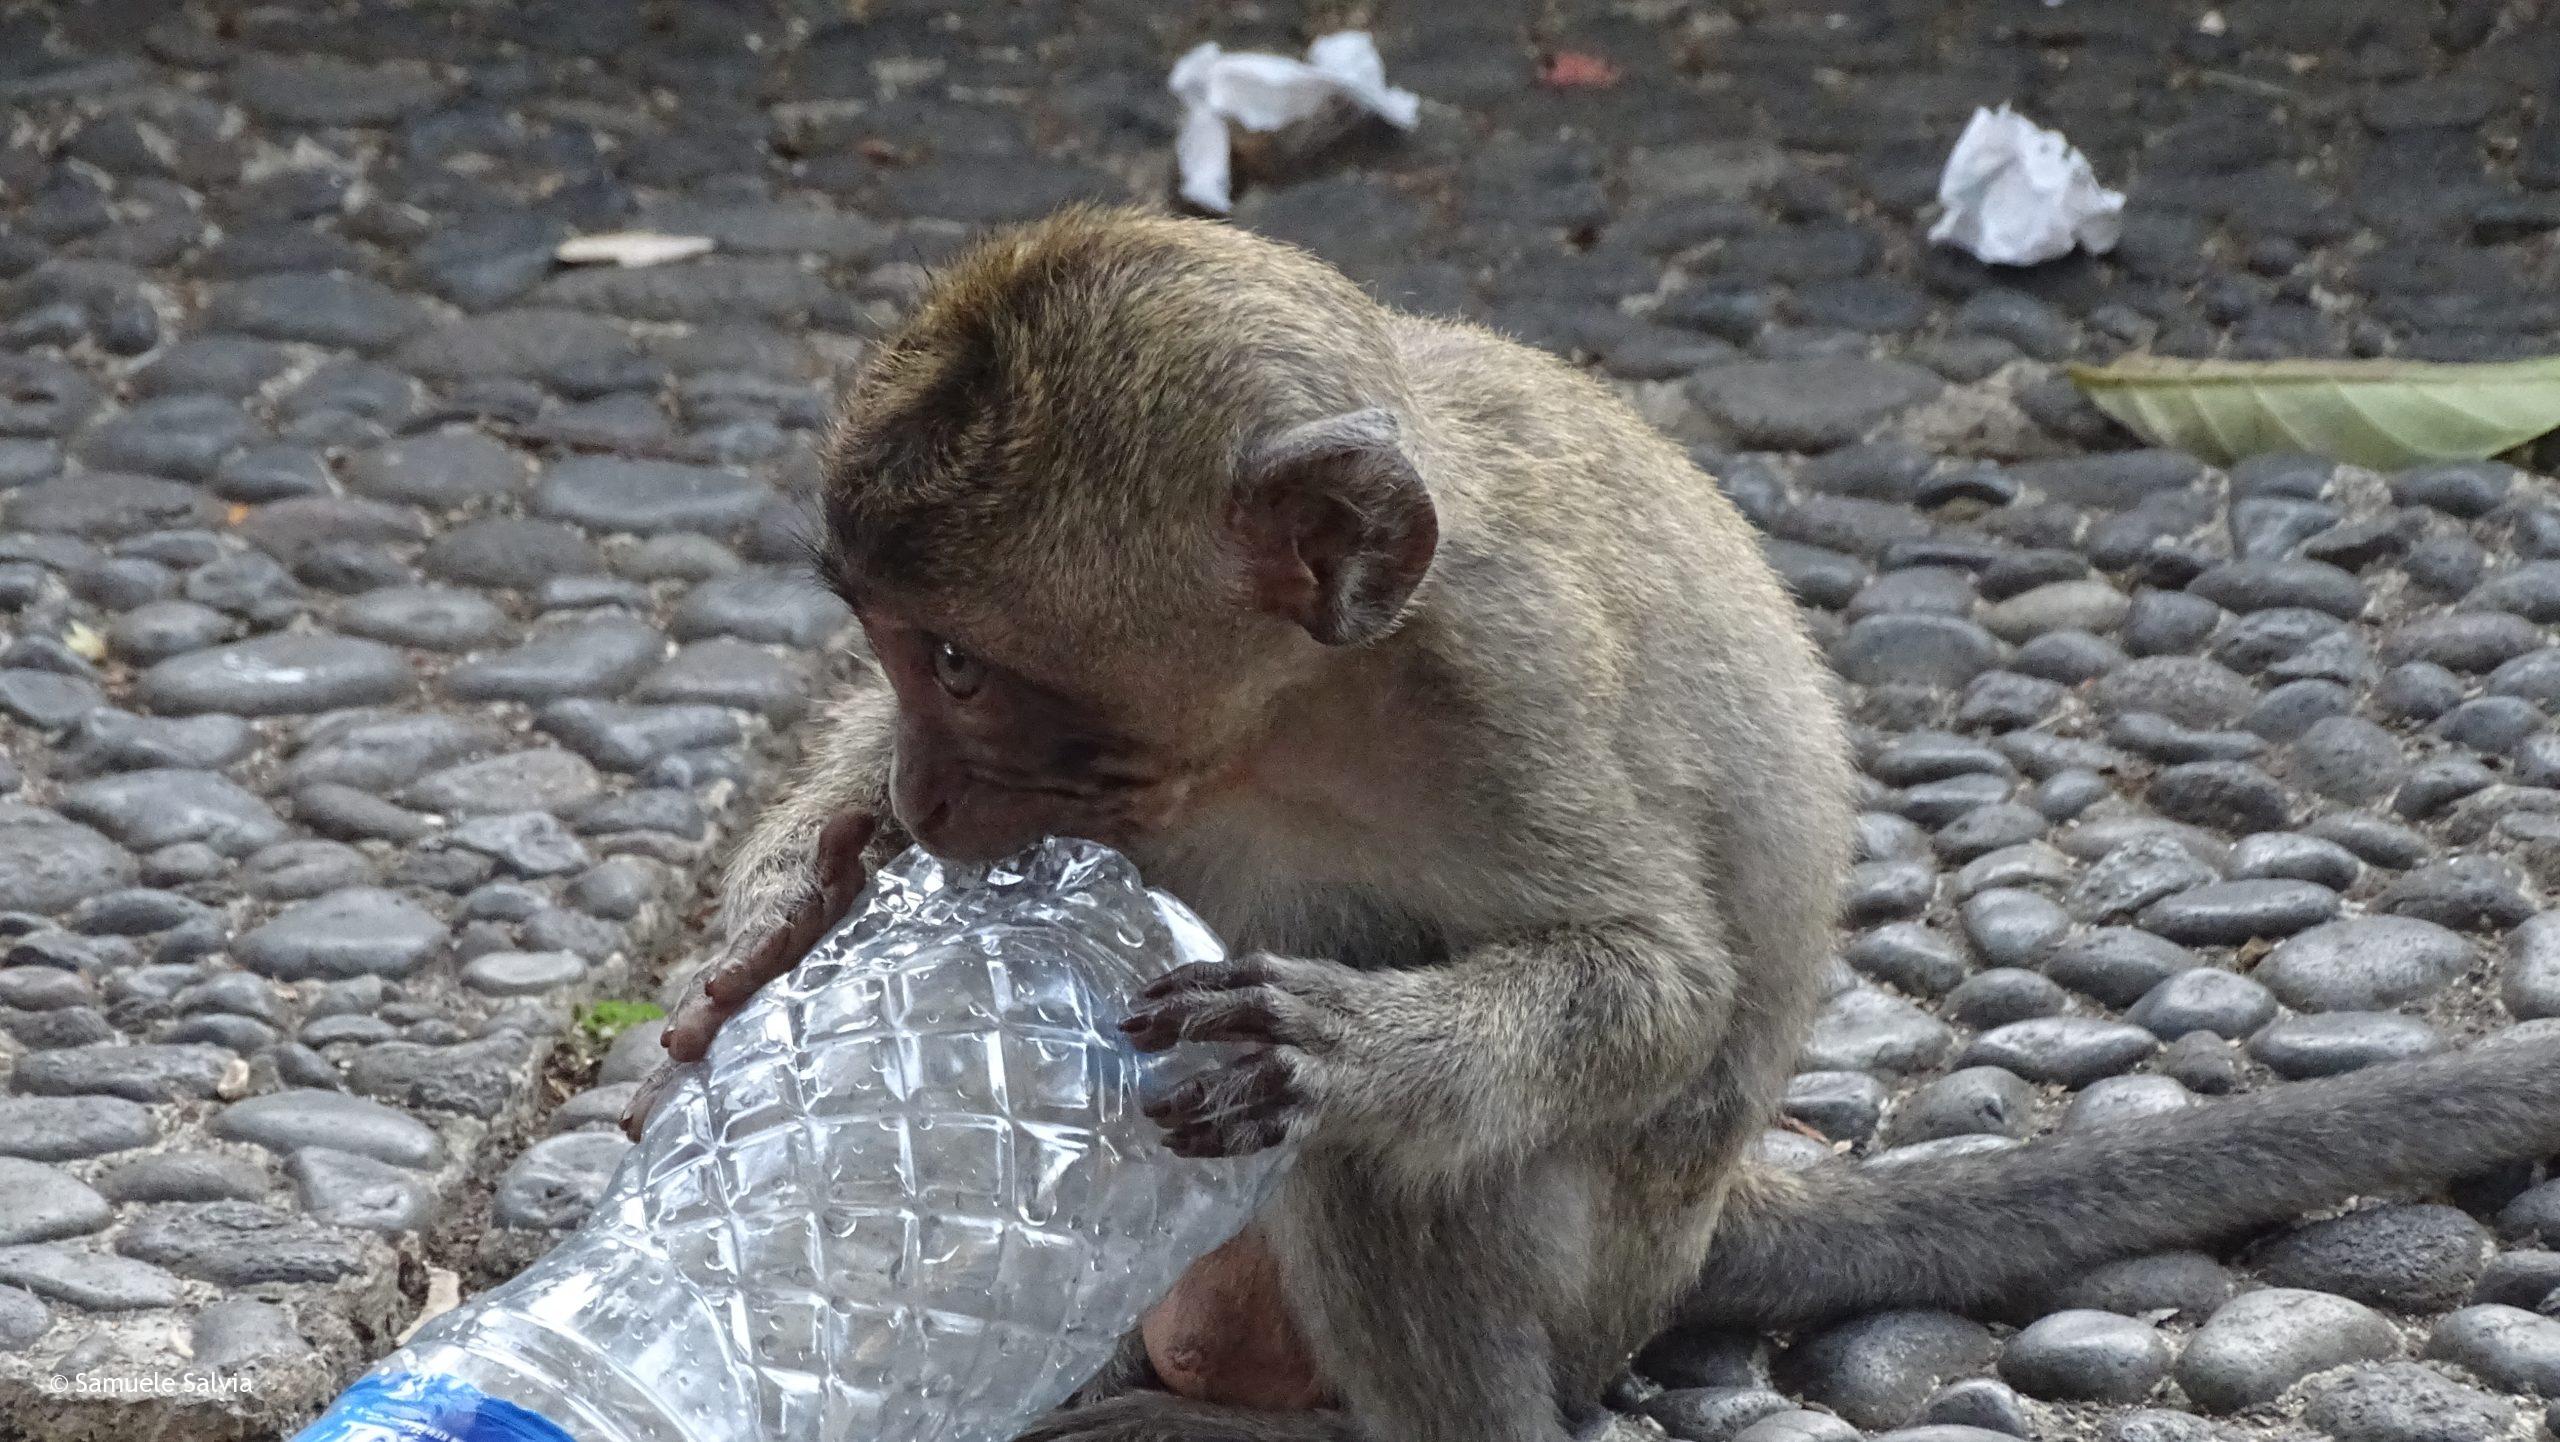 Un cucciolo di macaco rovista tra i rifiuti e morde una bottiglia di plastica. Ubud, Bali (Indonesia).